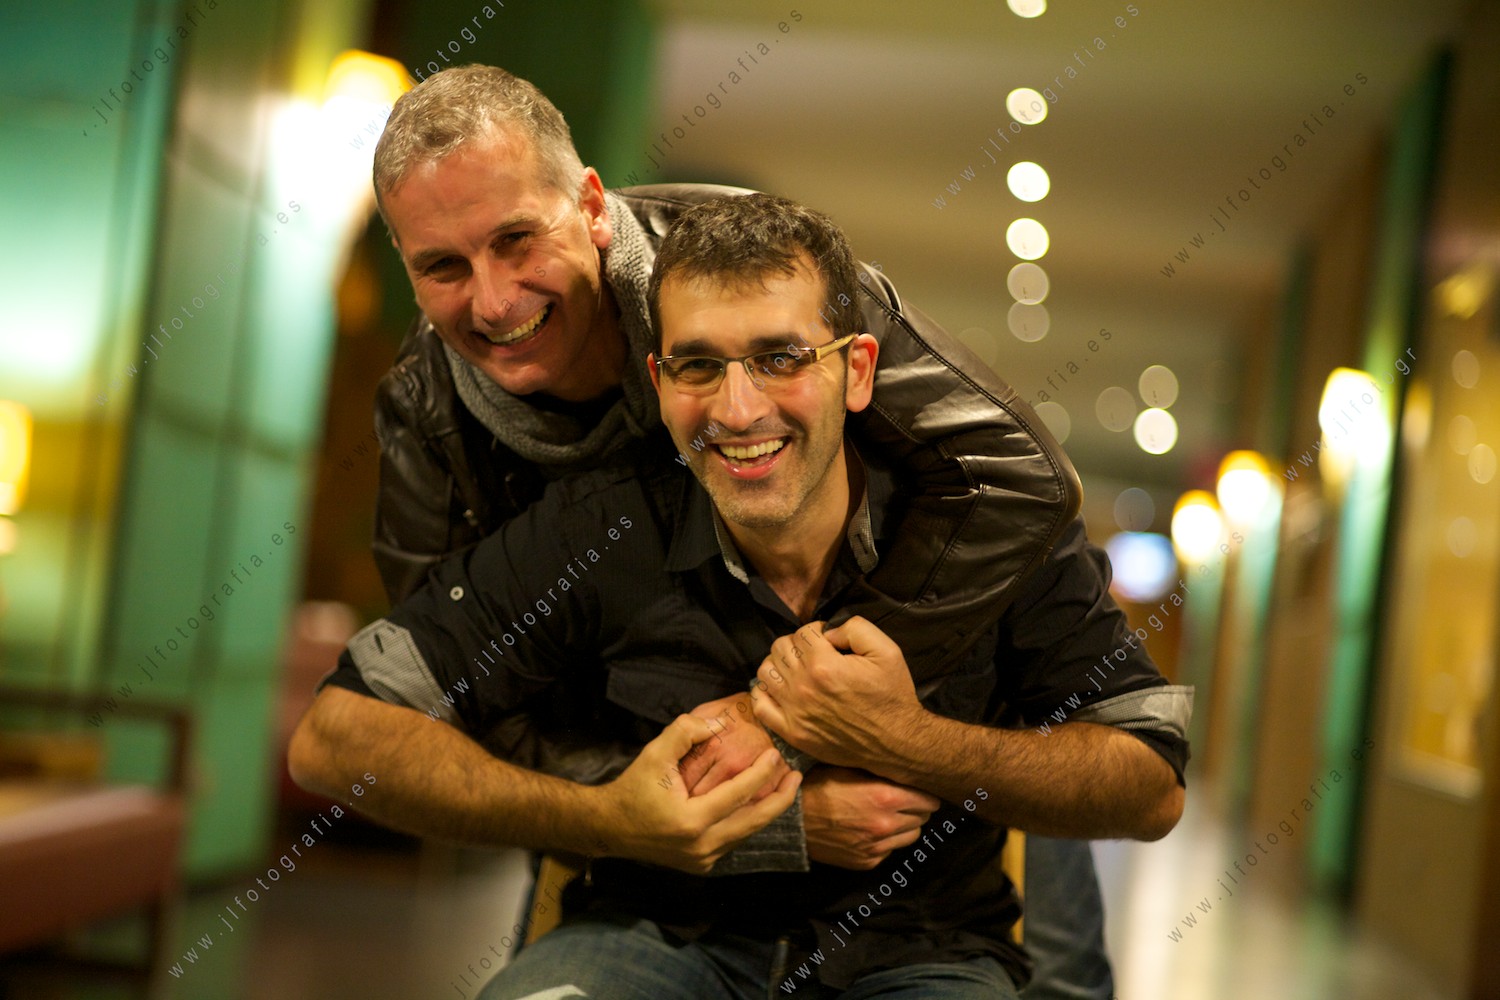 José Luis Rodriguez y José Antonio Fernández, socio de Denbora, posando con gracia